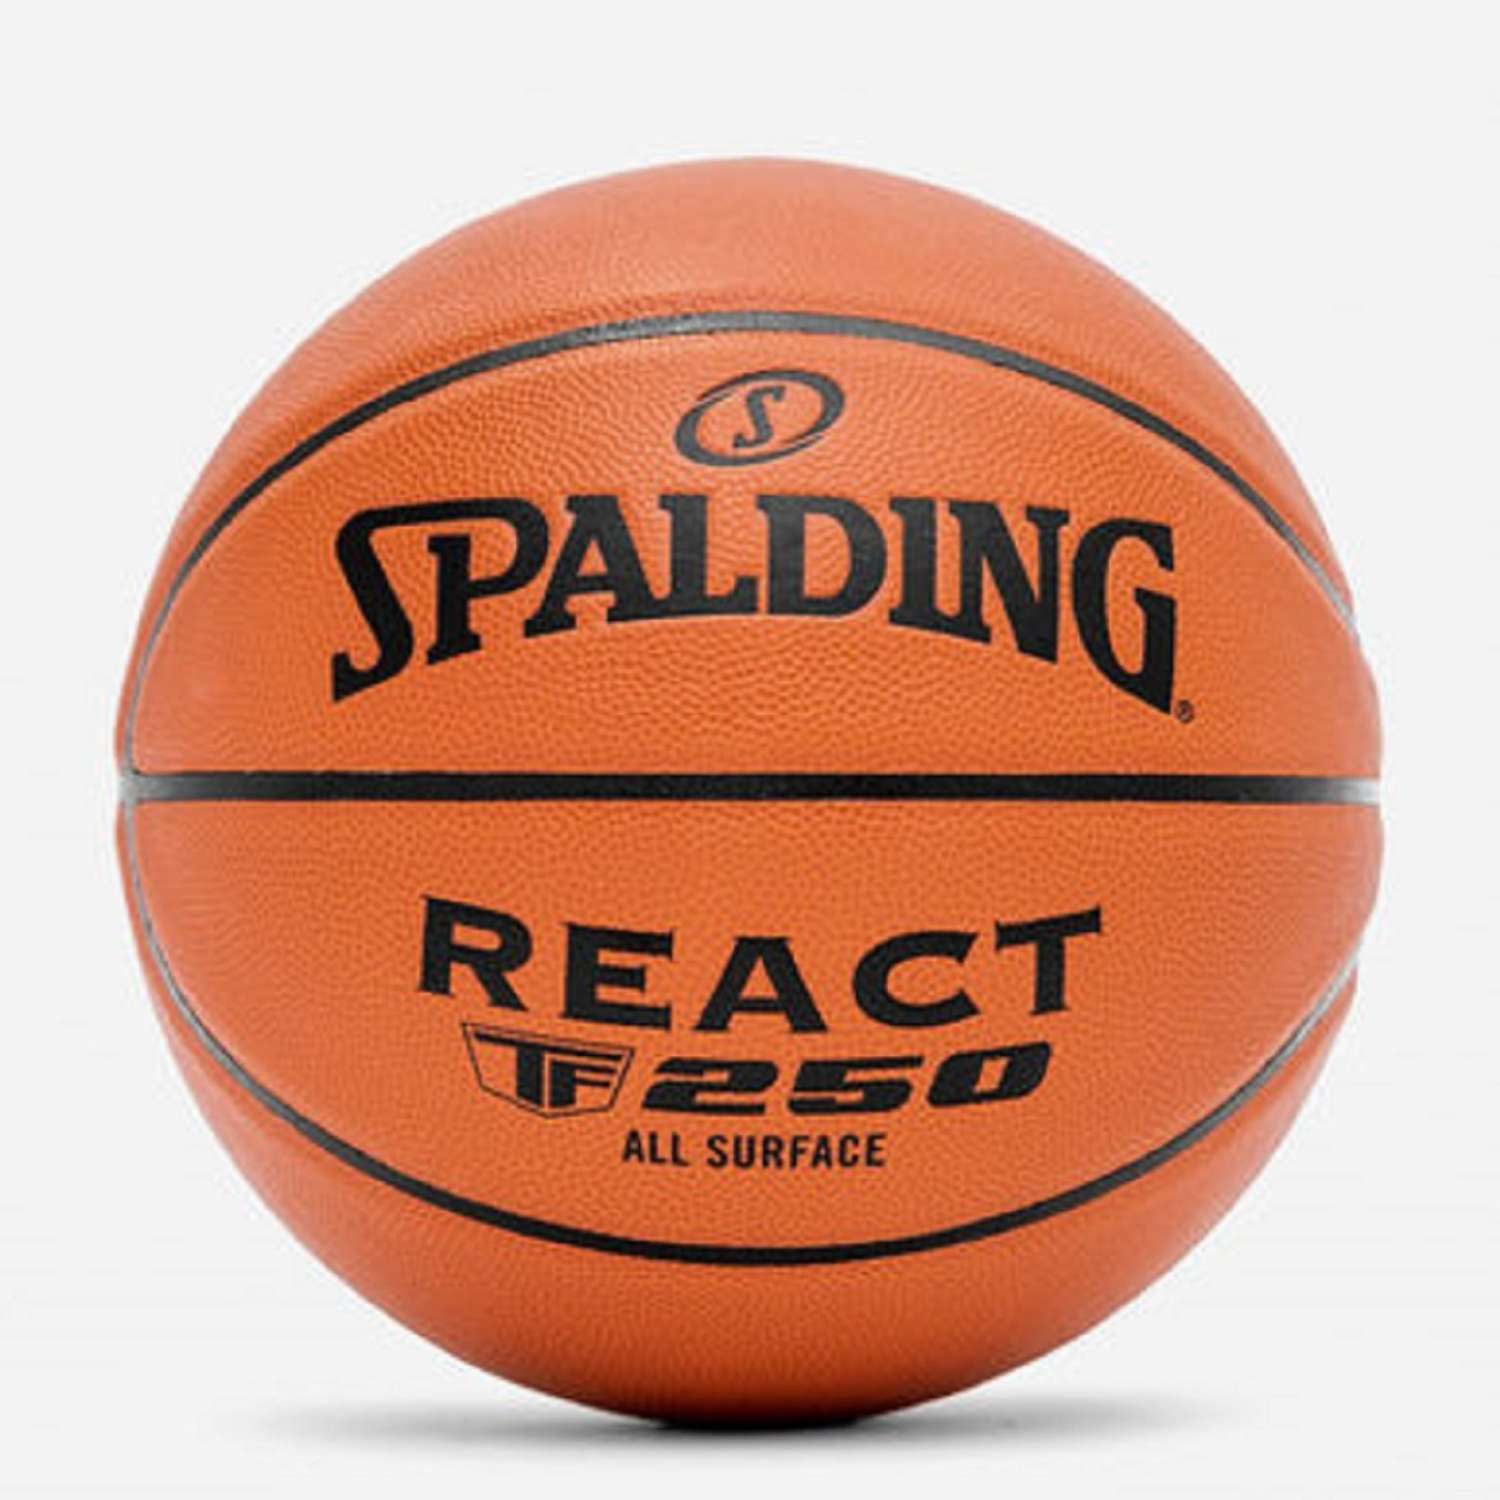 Баскетбольный мяч SPALDING Spalding react tf 250 Fiba sz6 - фото 1